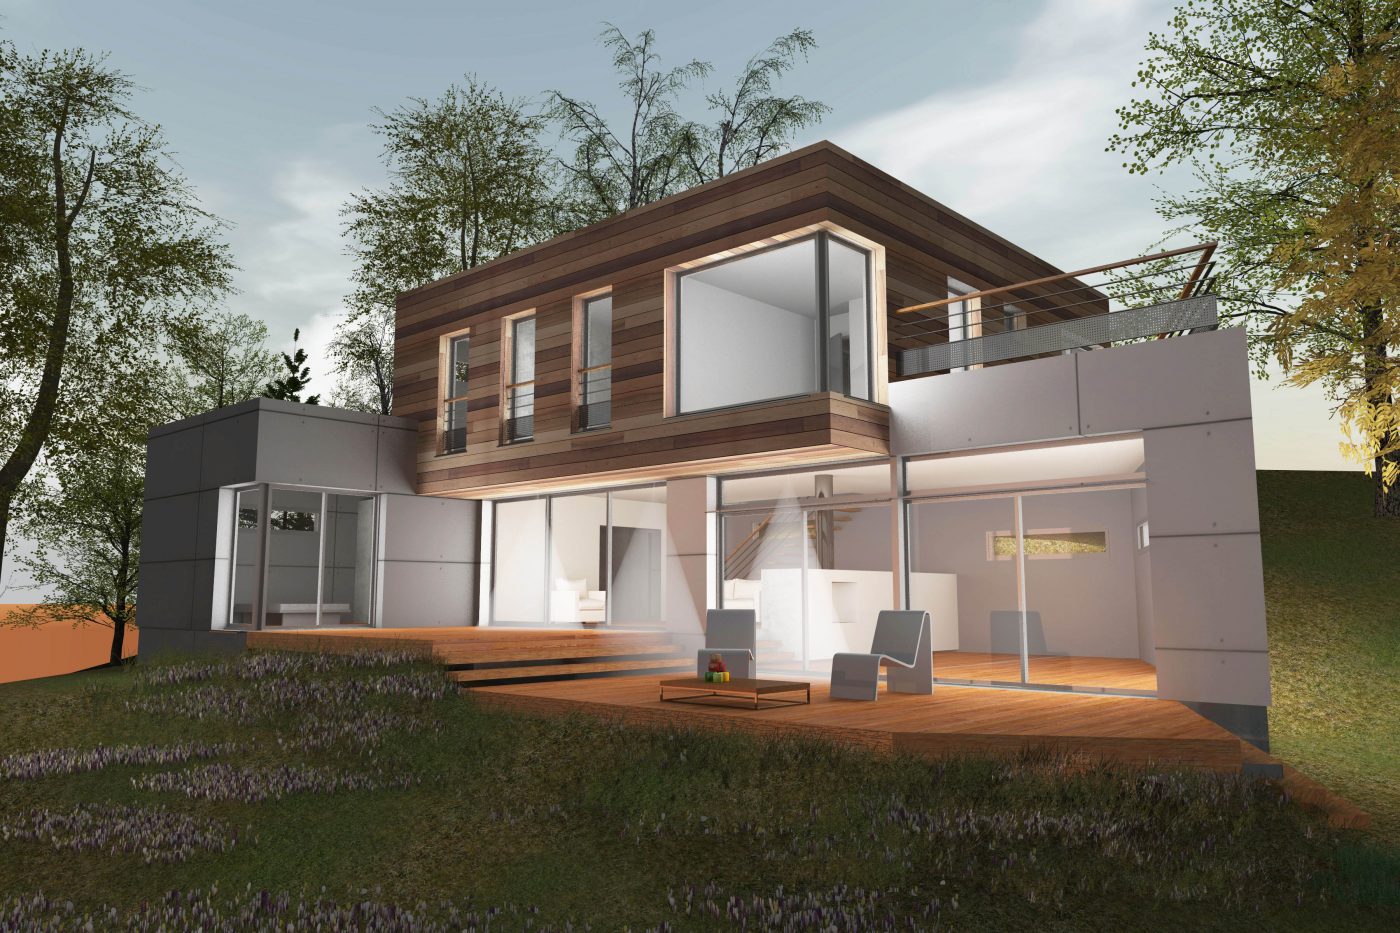 Philippe_Zerbib_Architecte_construction_maisons_ossature_bois_projet_maison_MACIA-CHIU-View 0_6